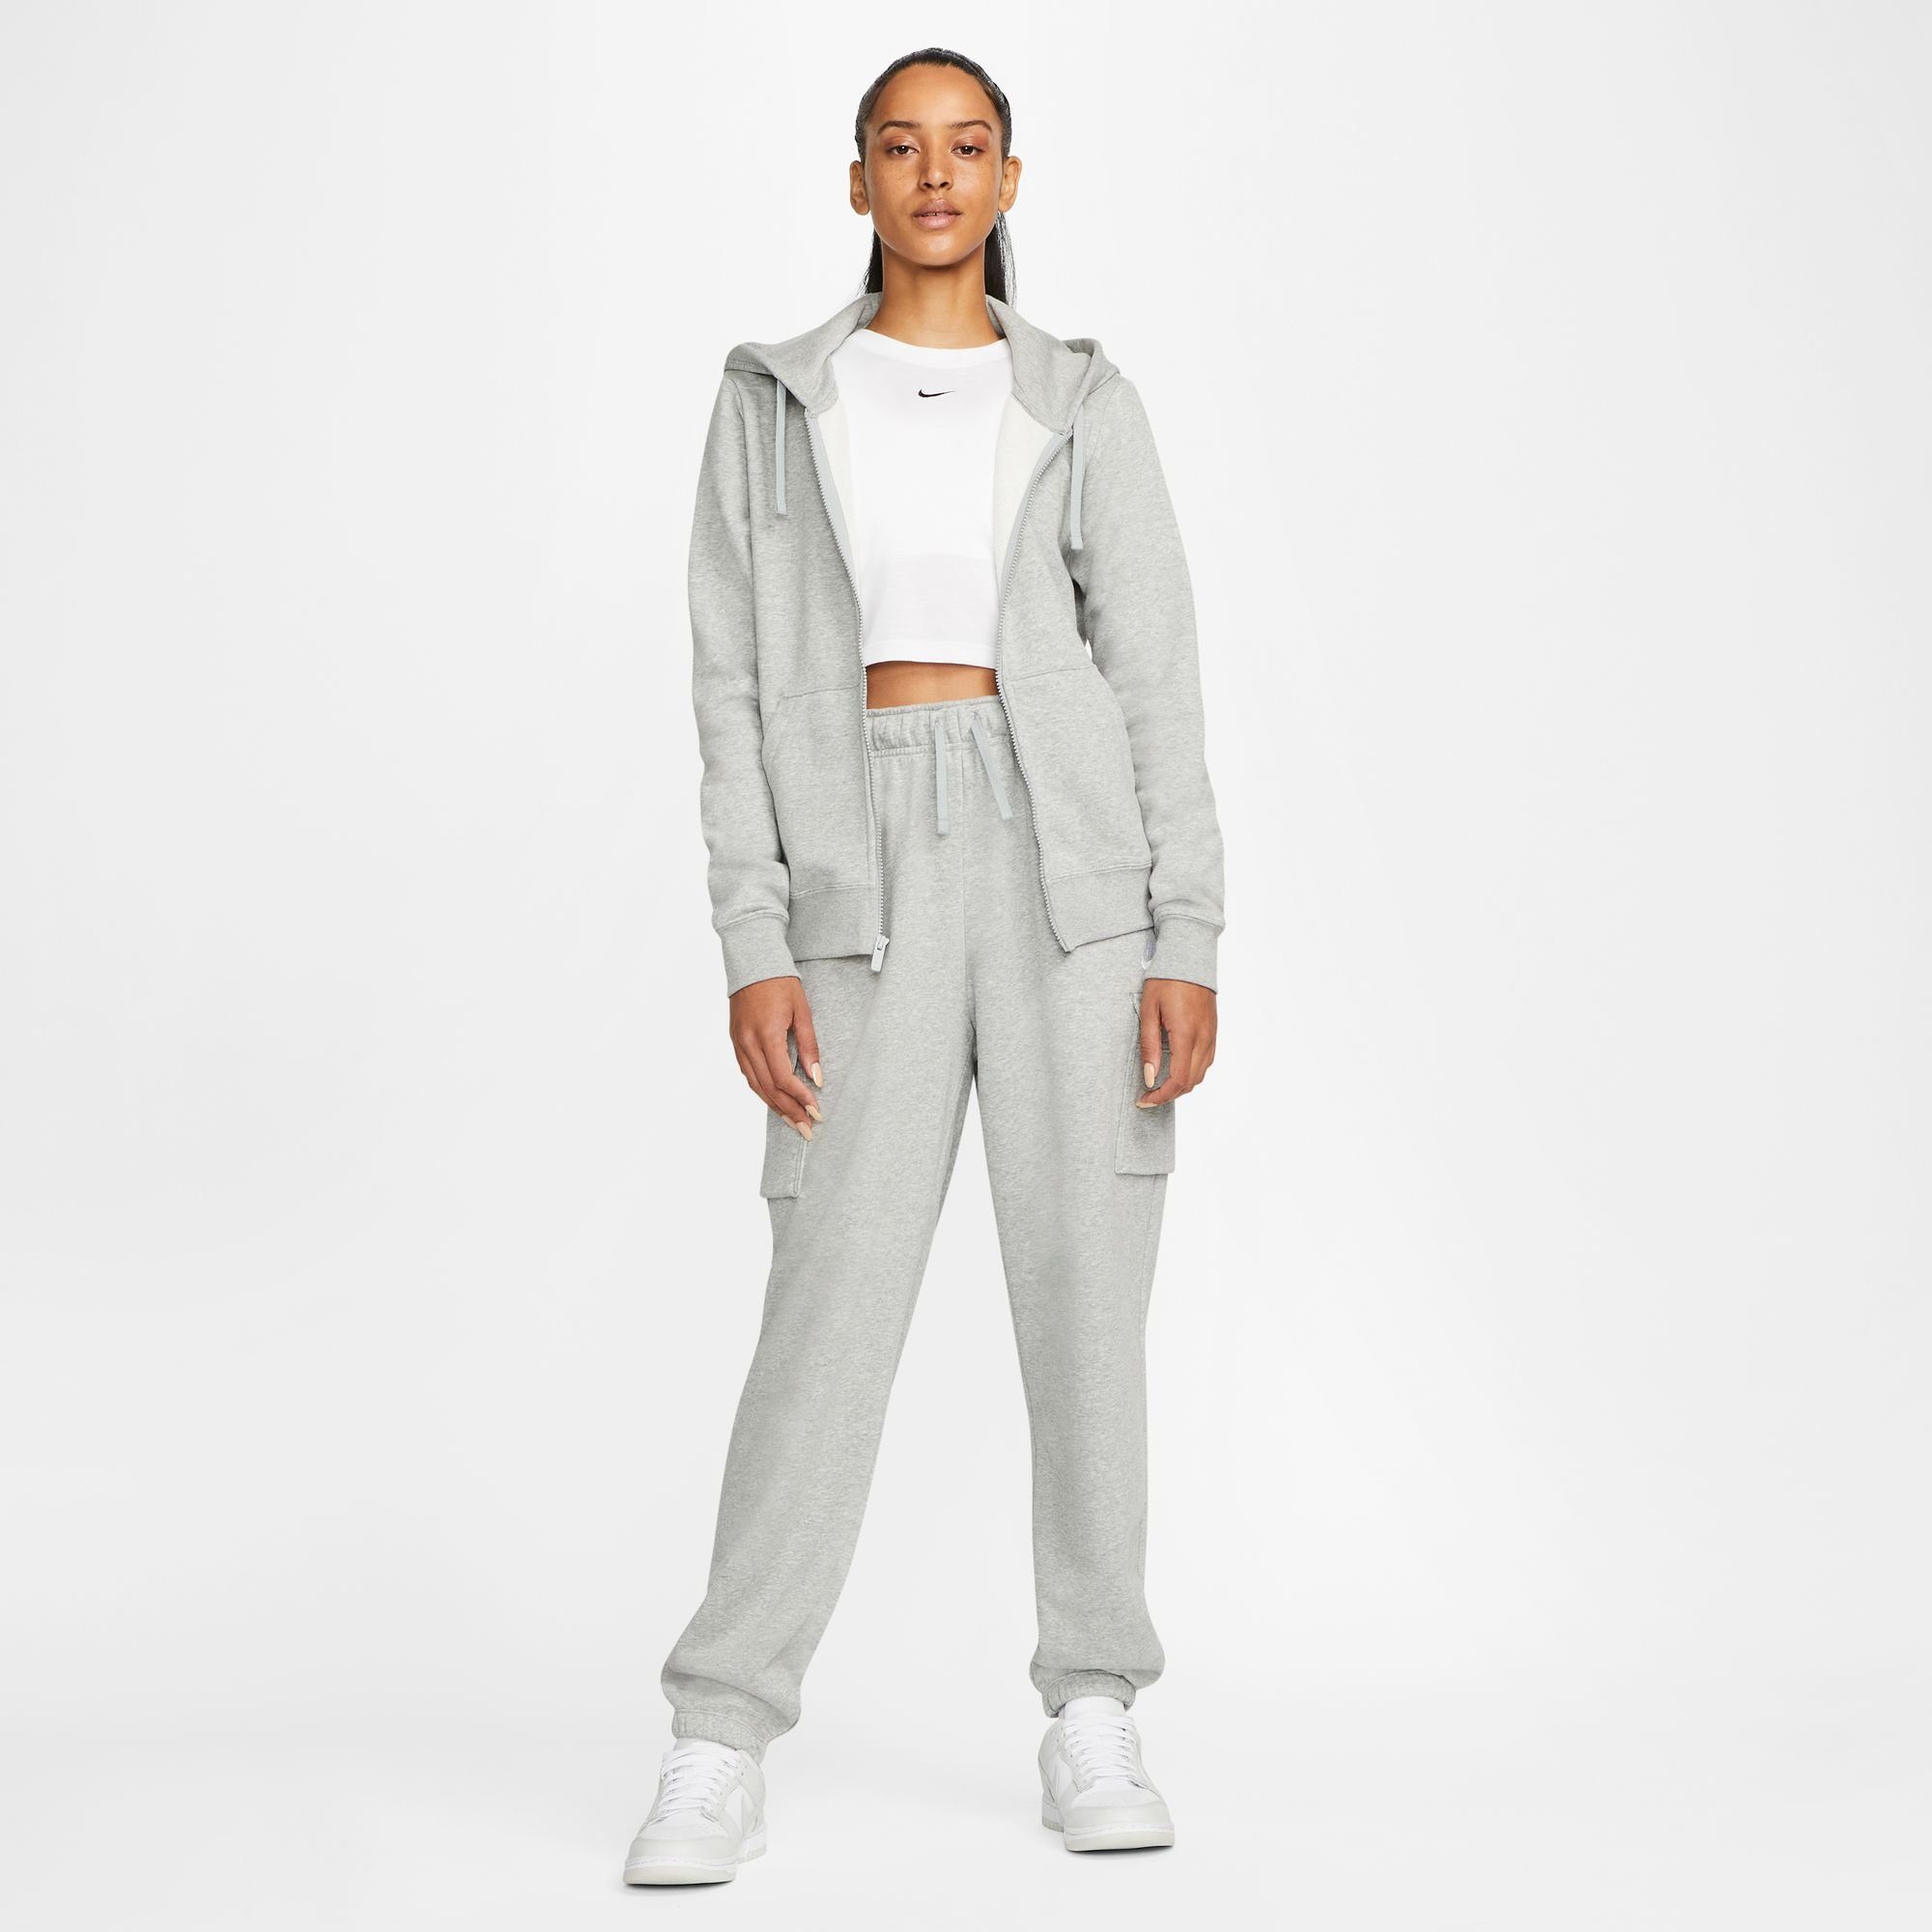 Kapuzensweatjacke HEATHER/WHITE Sportswear Full-Zip Women's Hoodie DK Nike GREY Club Fleece